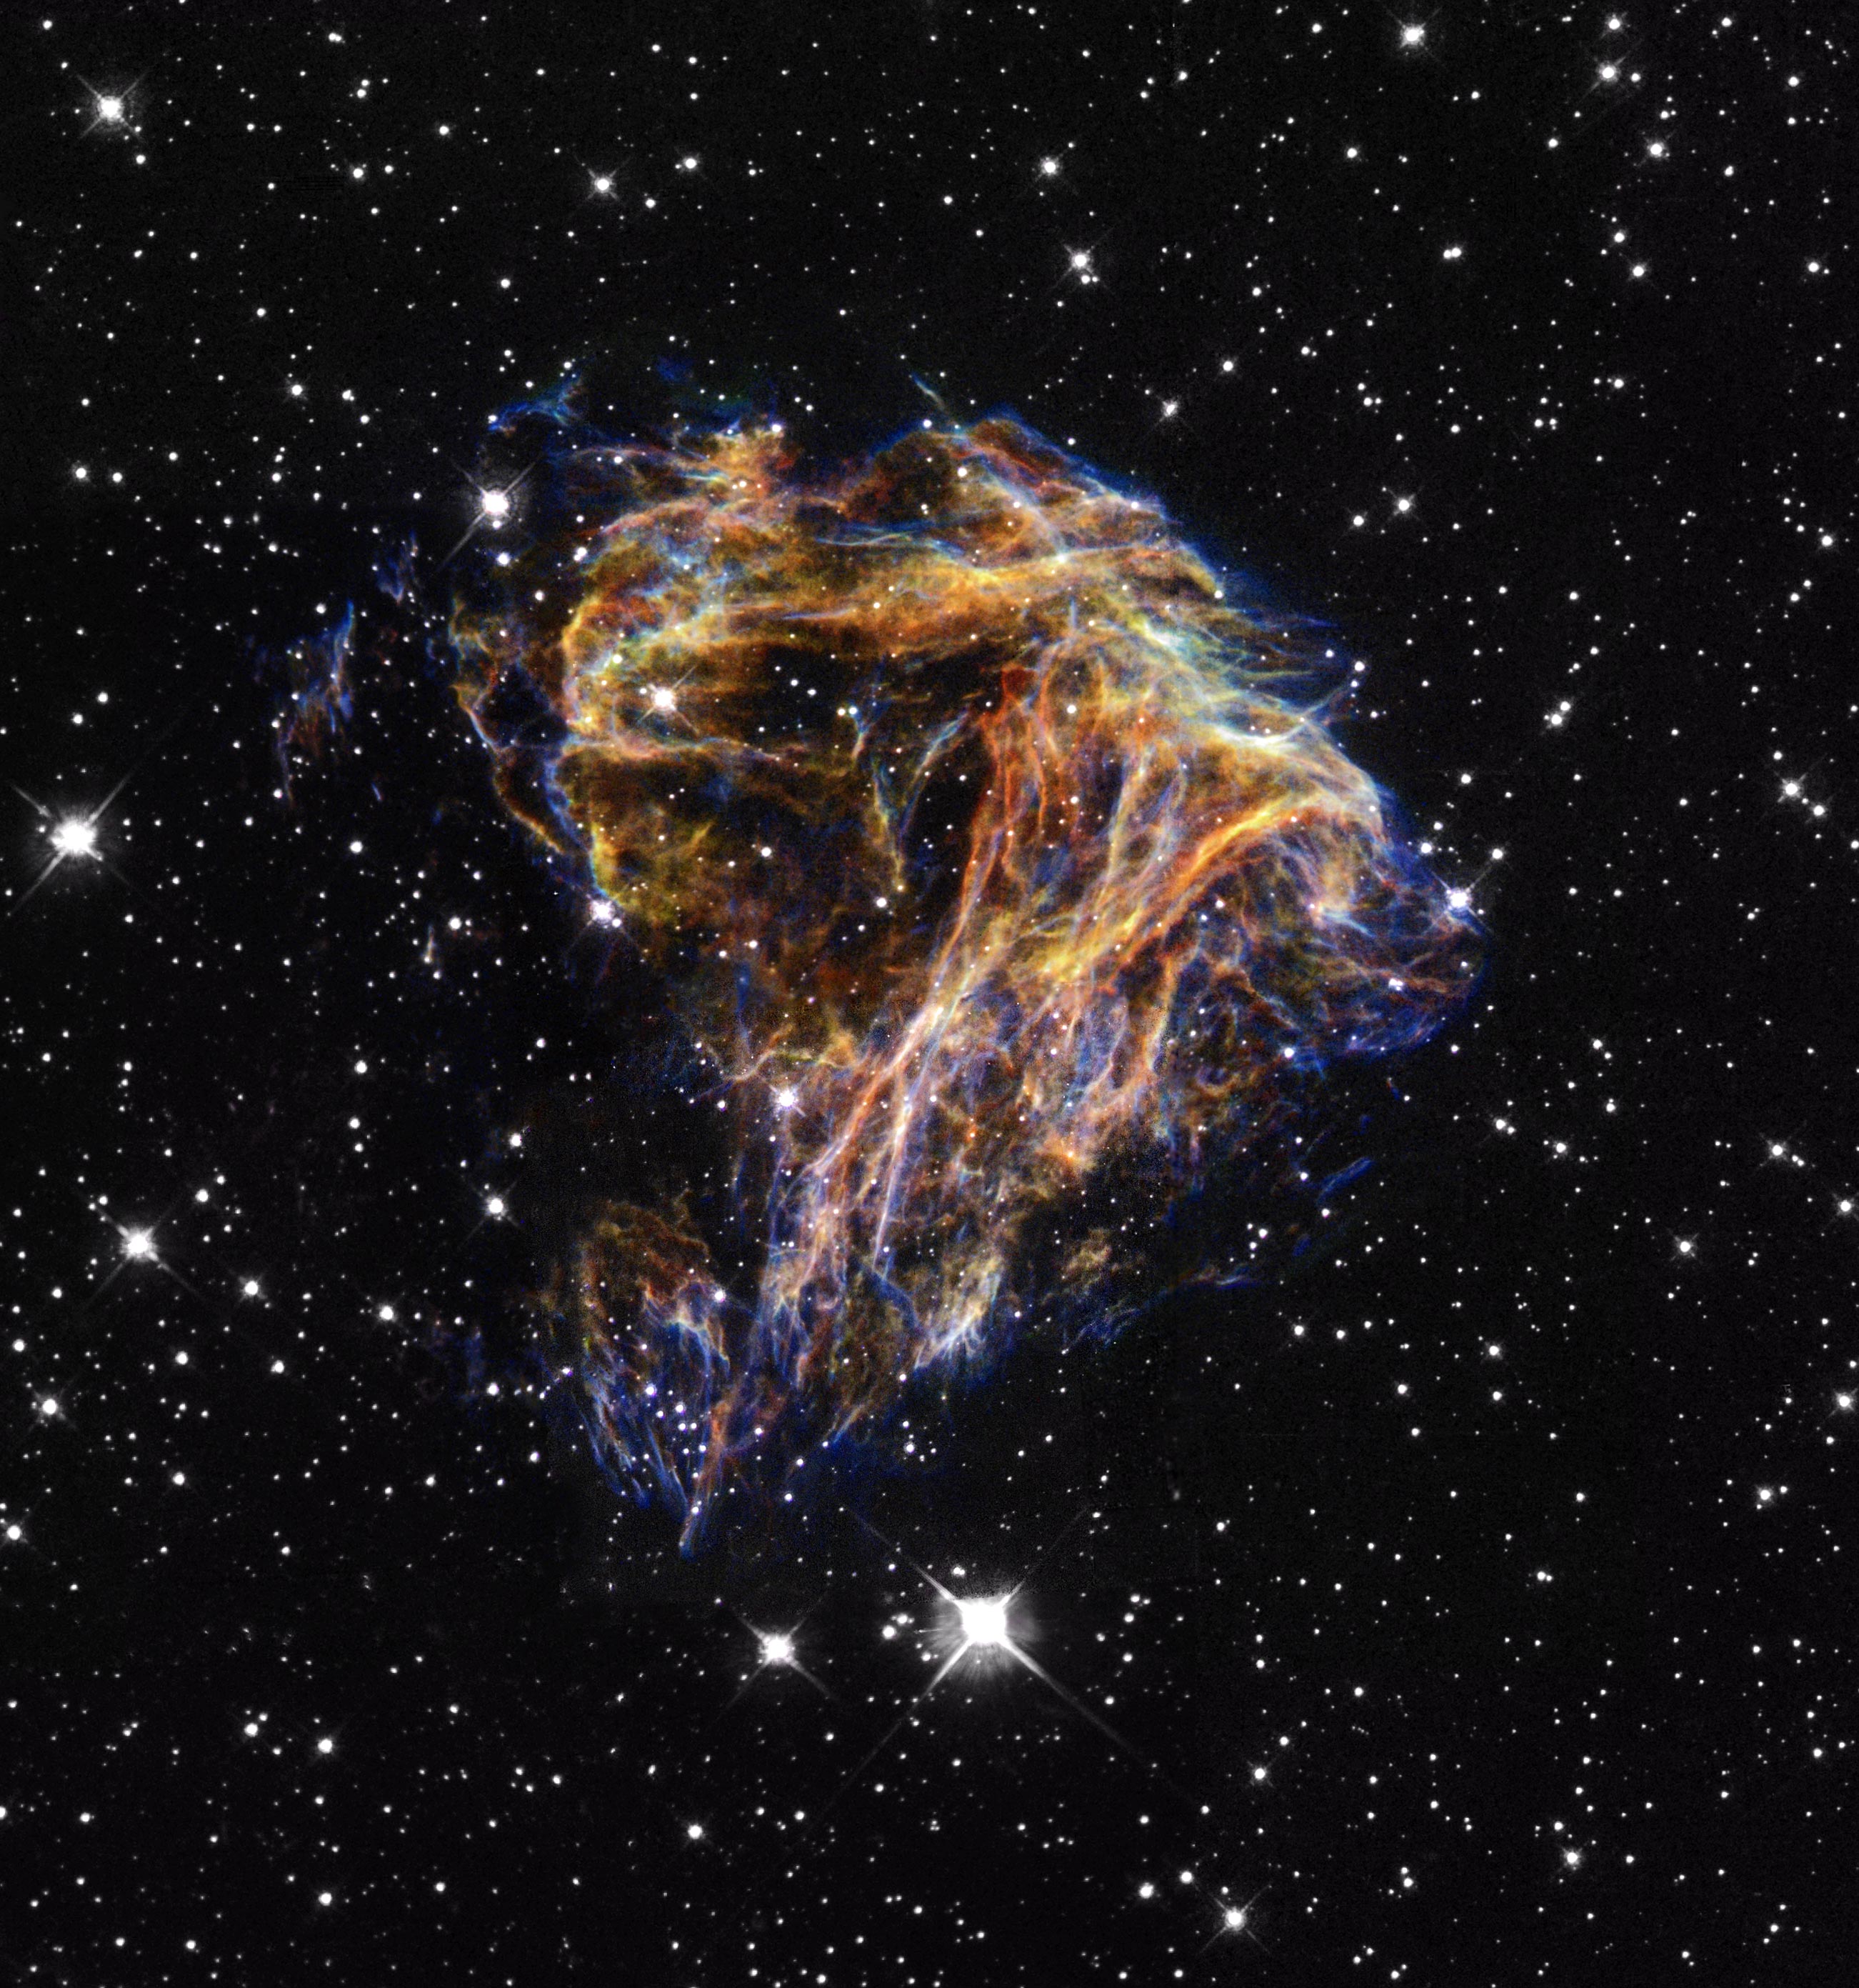 Supernova Remnant N 49